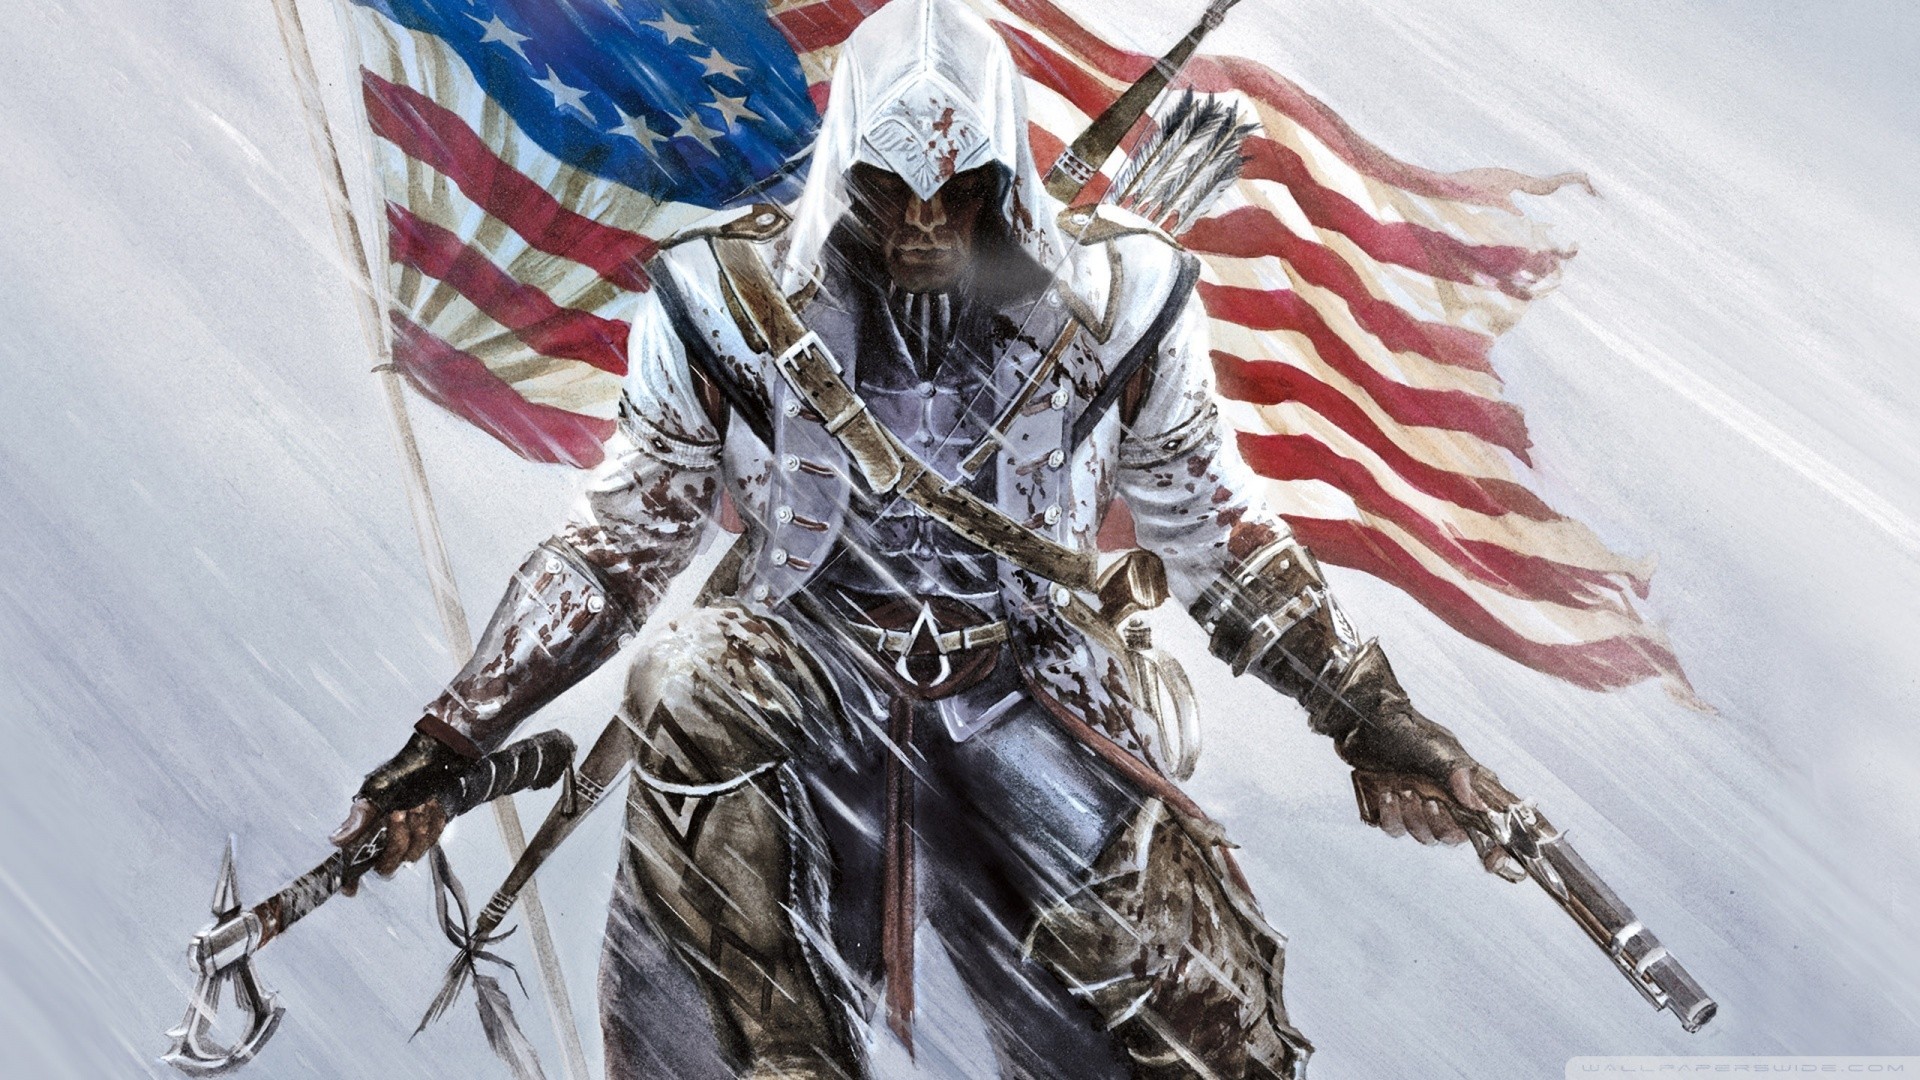 47+] Assassin S Creed Wallpapers - WallpaperSafari